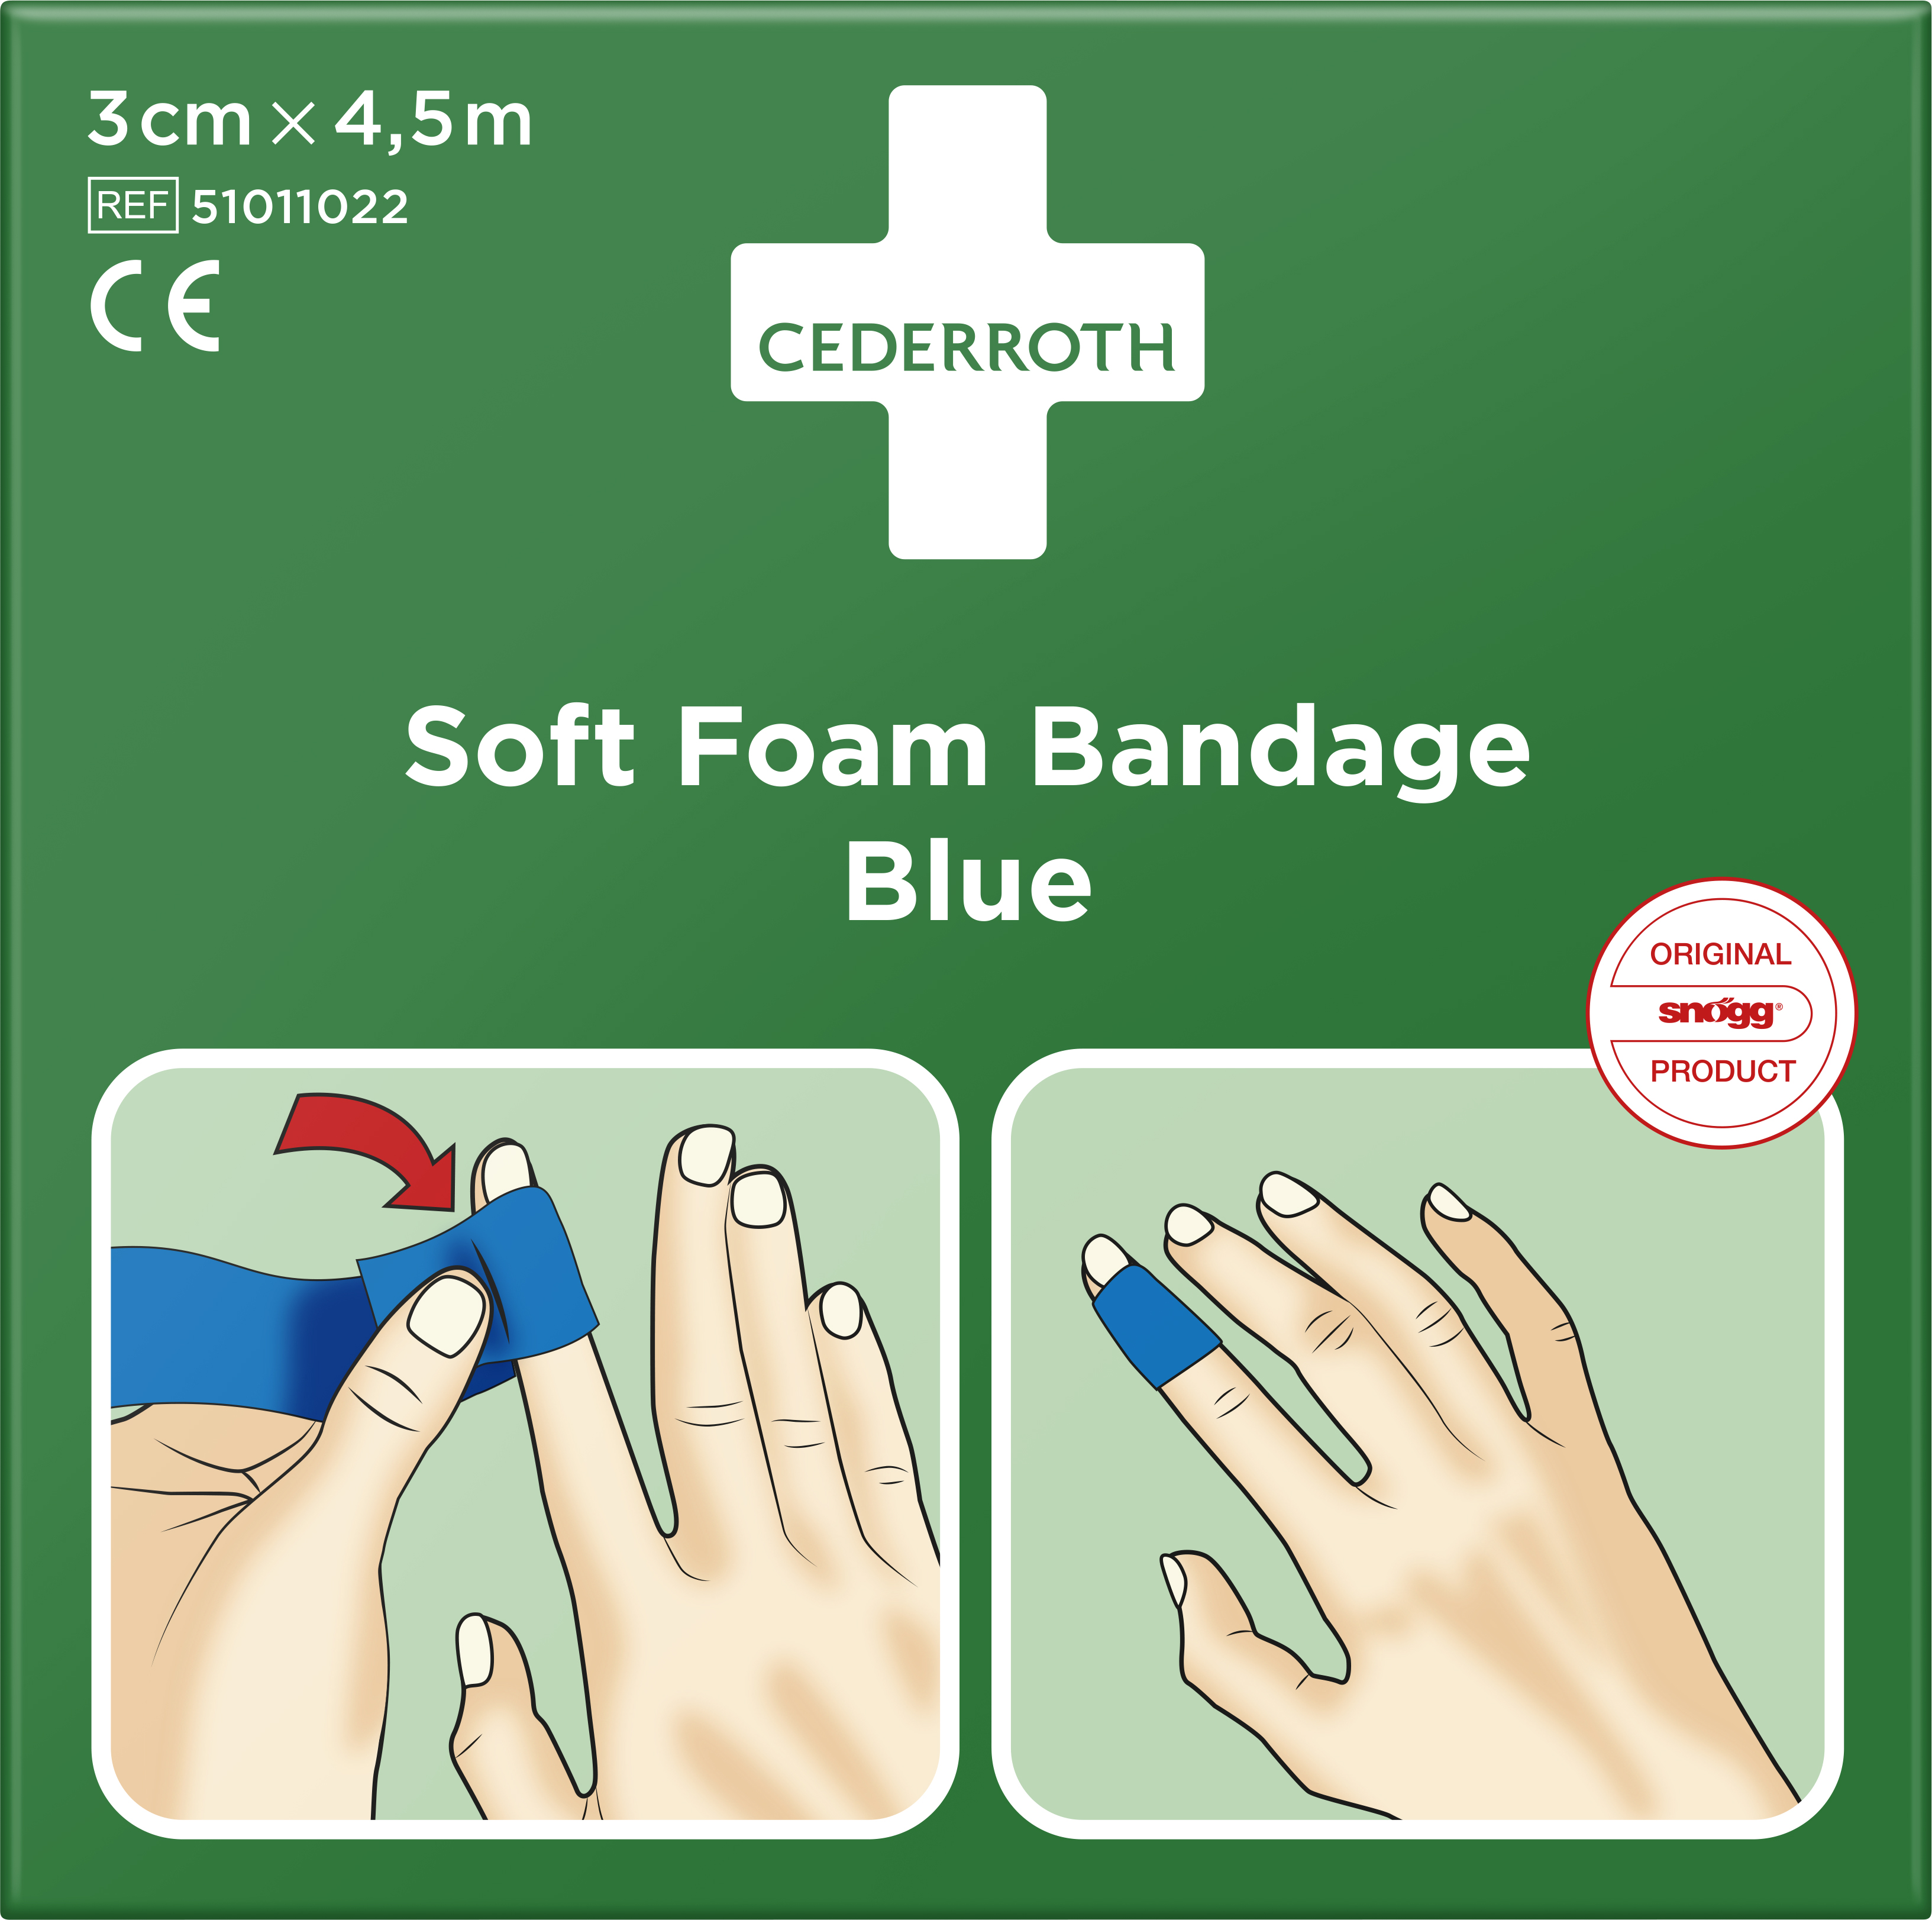 Cederroth Soft Foam Bandage Blue 3 cm x 4,5 m